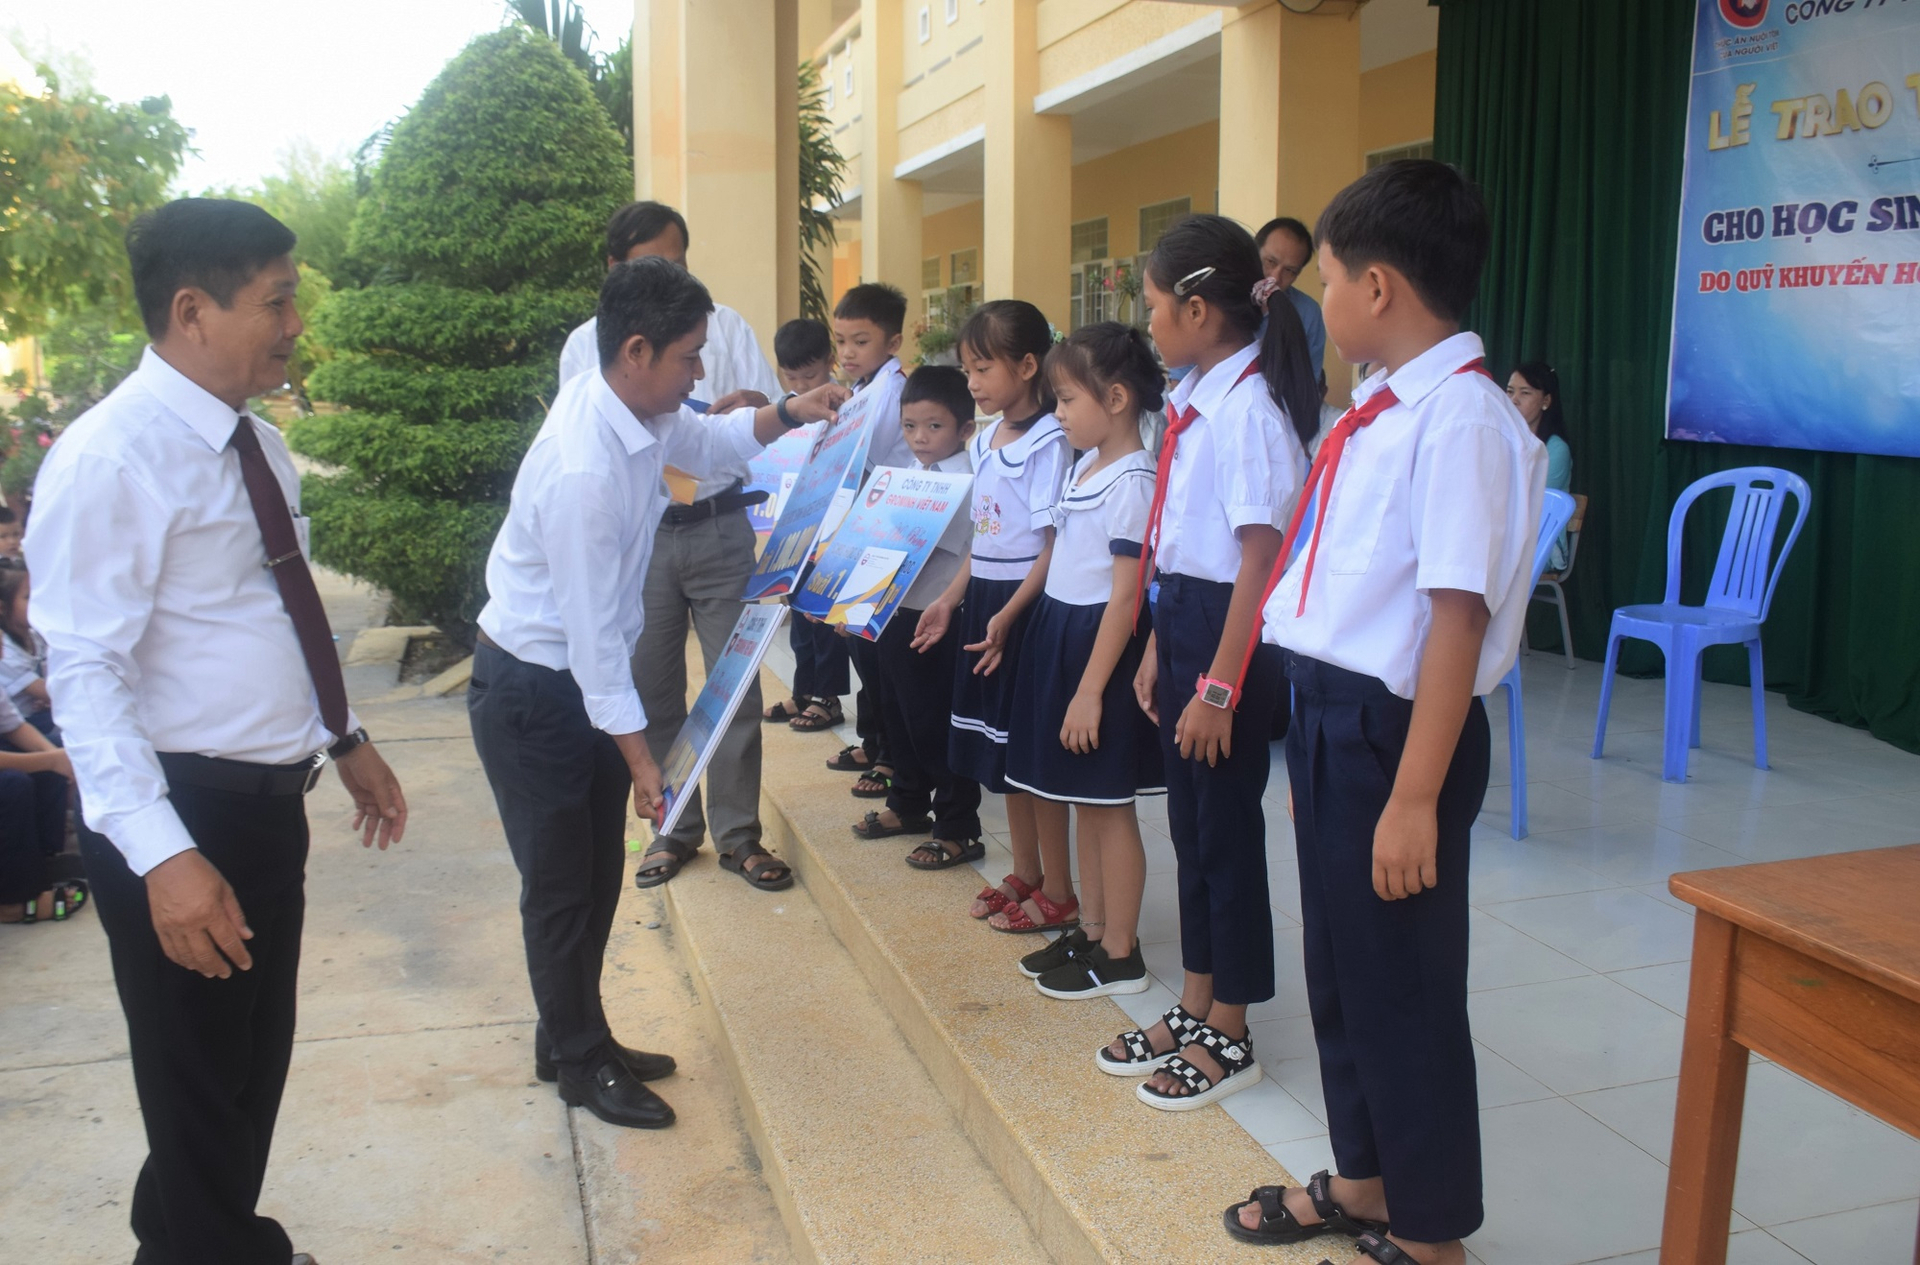 Ông Huỳnh Văn Thăng, Phó trưởng khu vực Phú Yên của Công ty TNHH GroMinh Việt Nam, trao học bổng cho các cháu Trường Tiểu học số 2 An Ninh Đông. Ảnh: V.Đ.T.